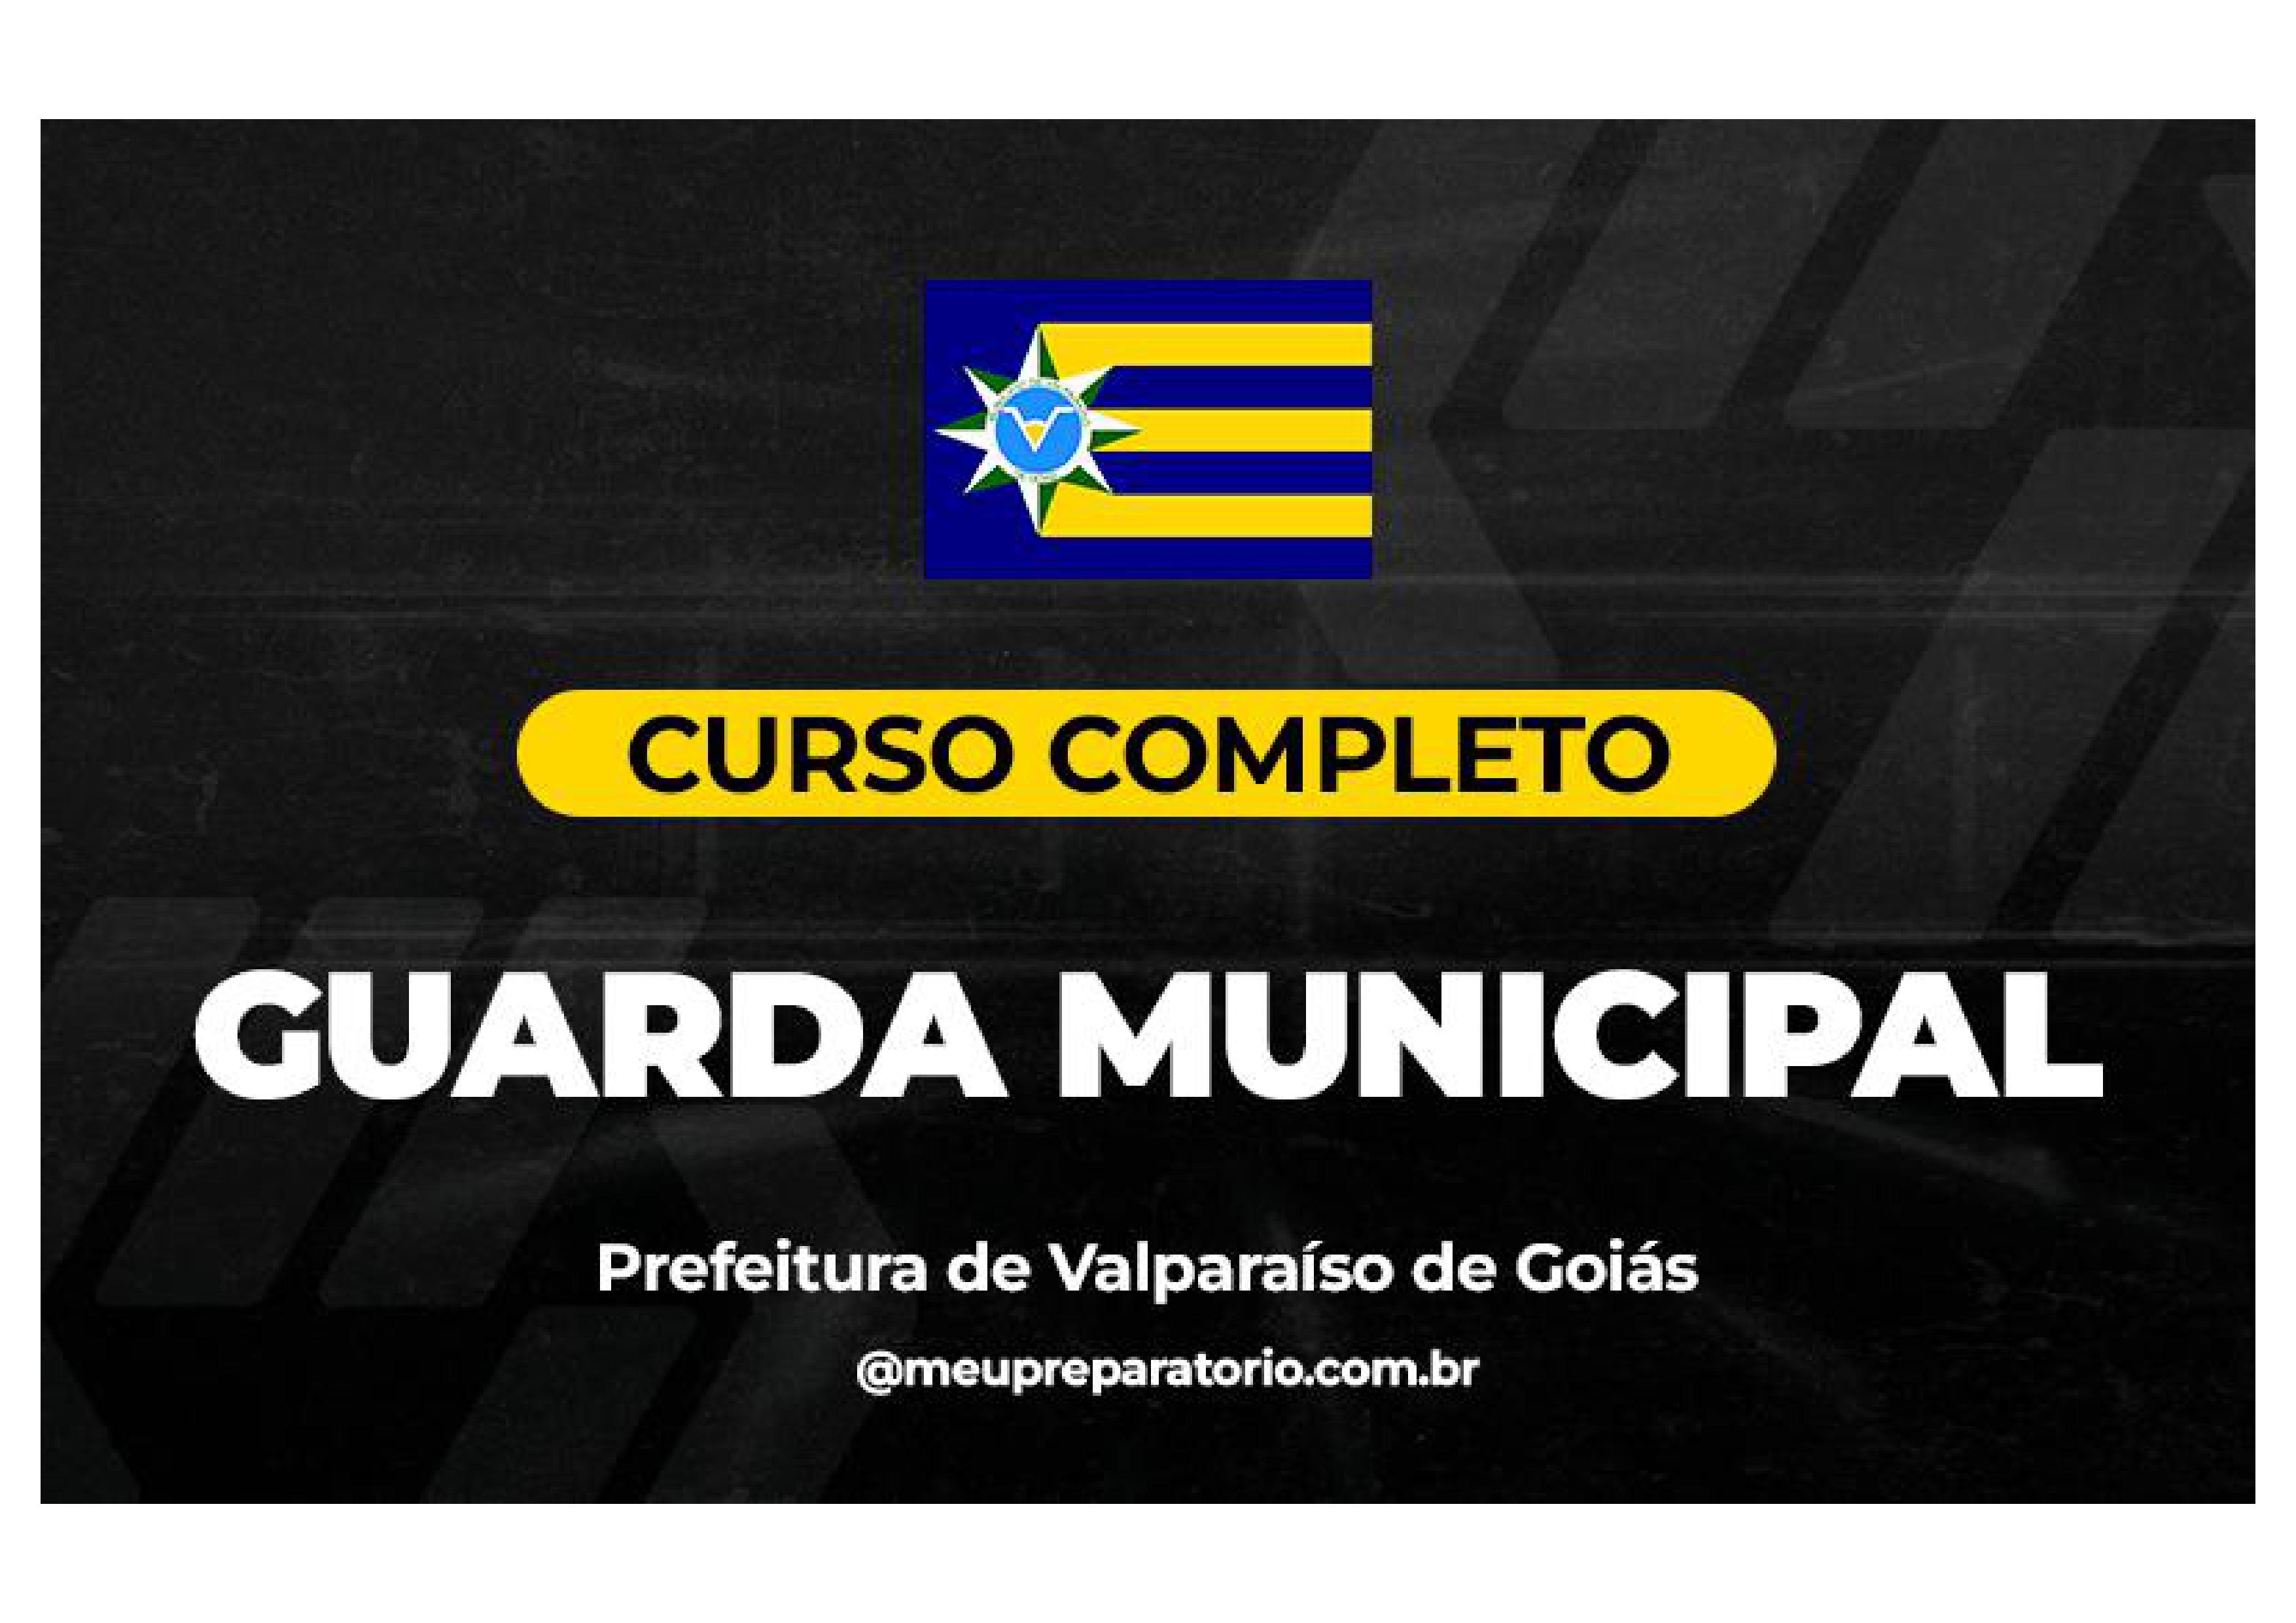 Guarda Municipal - Valparaíso (GO)